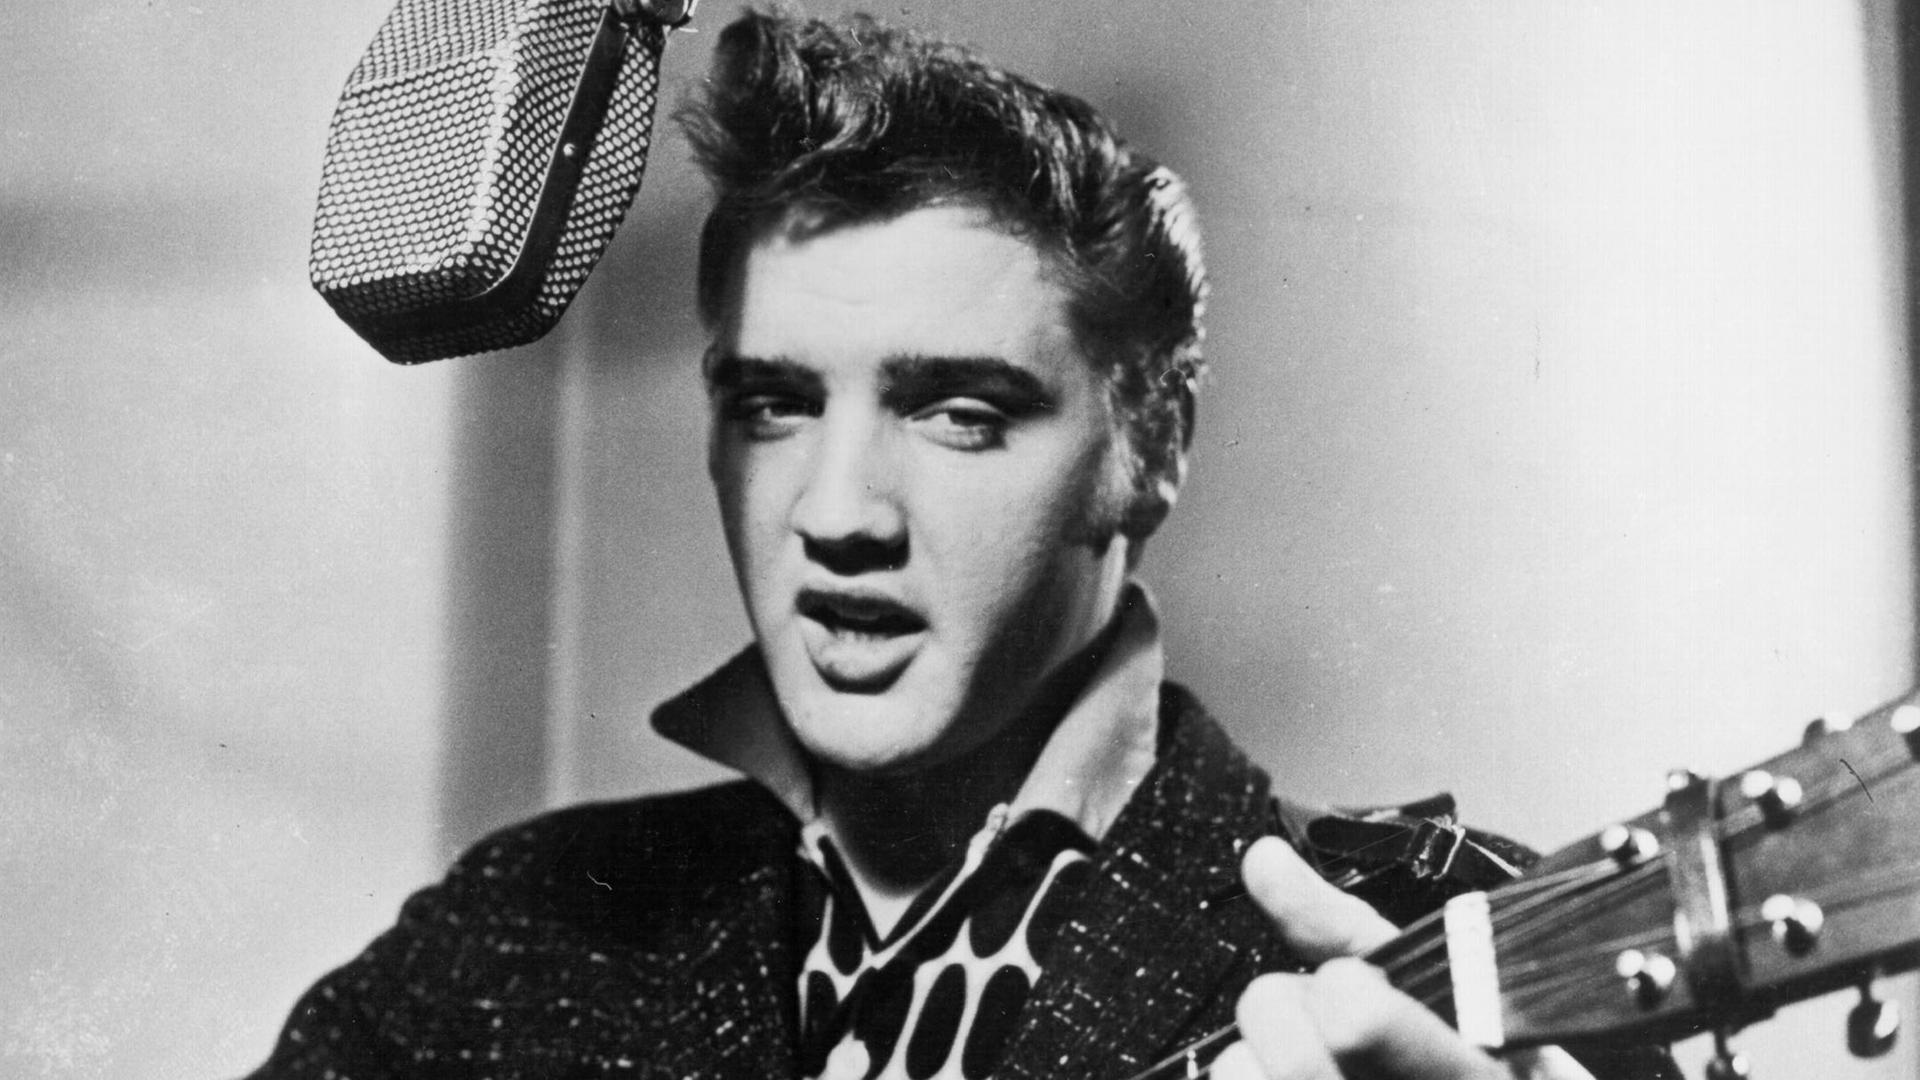 "Die sieben Leben des Elvis Presley": Schwarz-Weiß-Foto: Elvis Presley singt in ein Studiomikrofon und spielt dabei Gitarre.